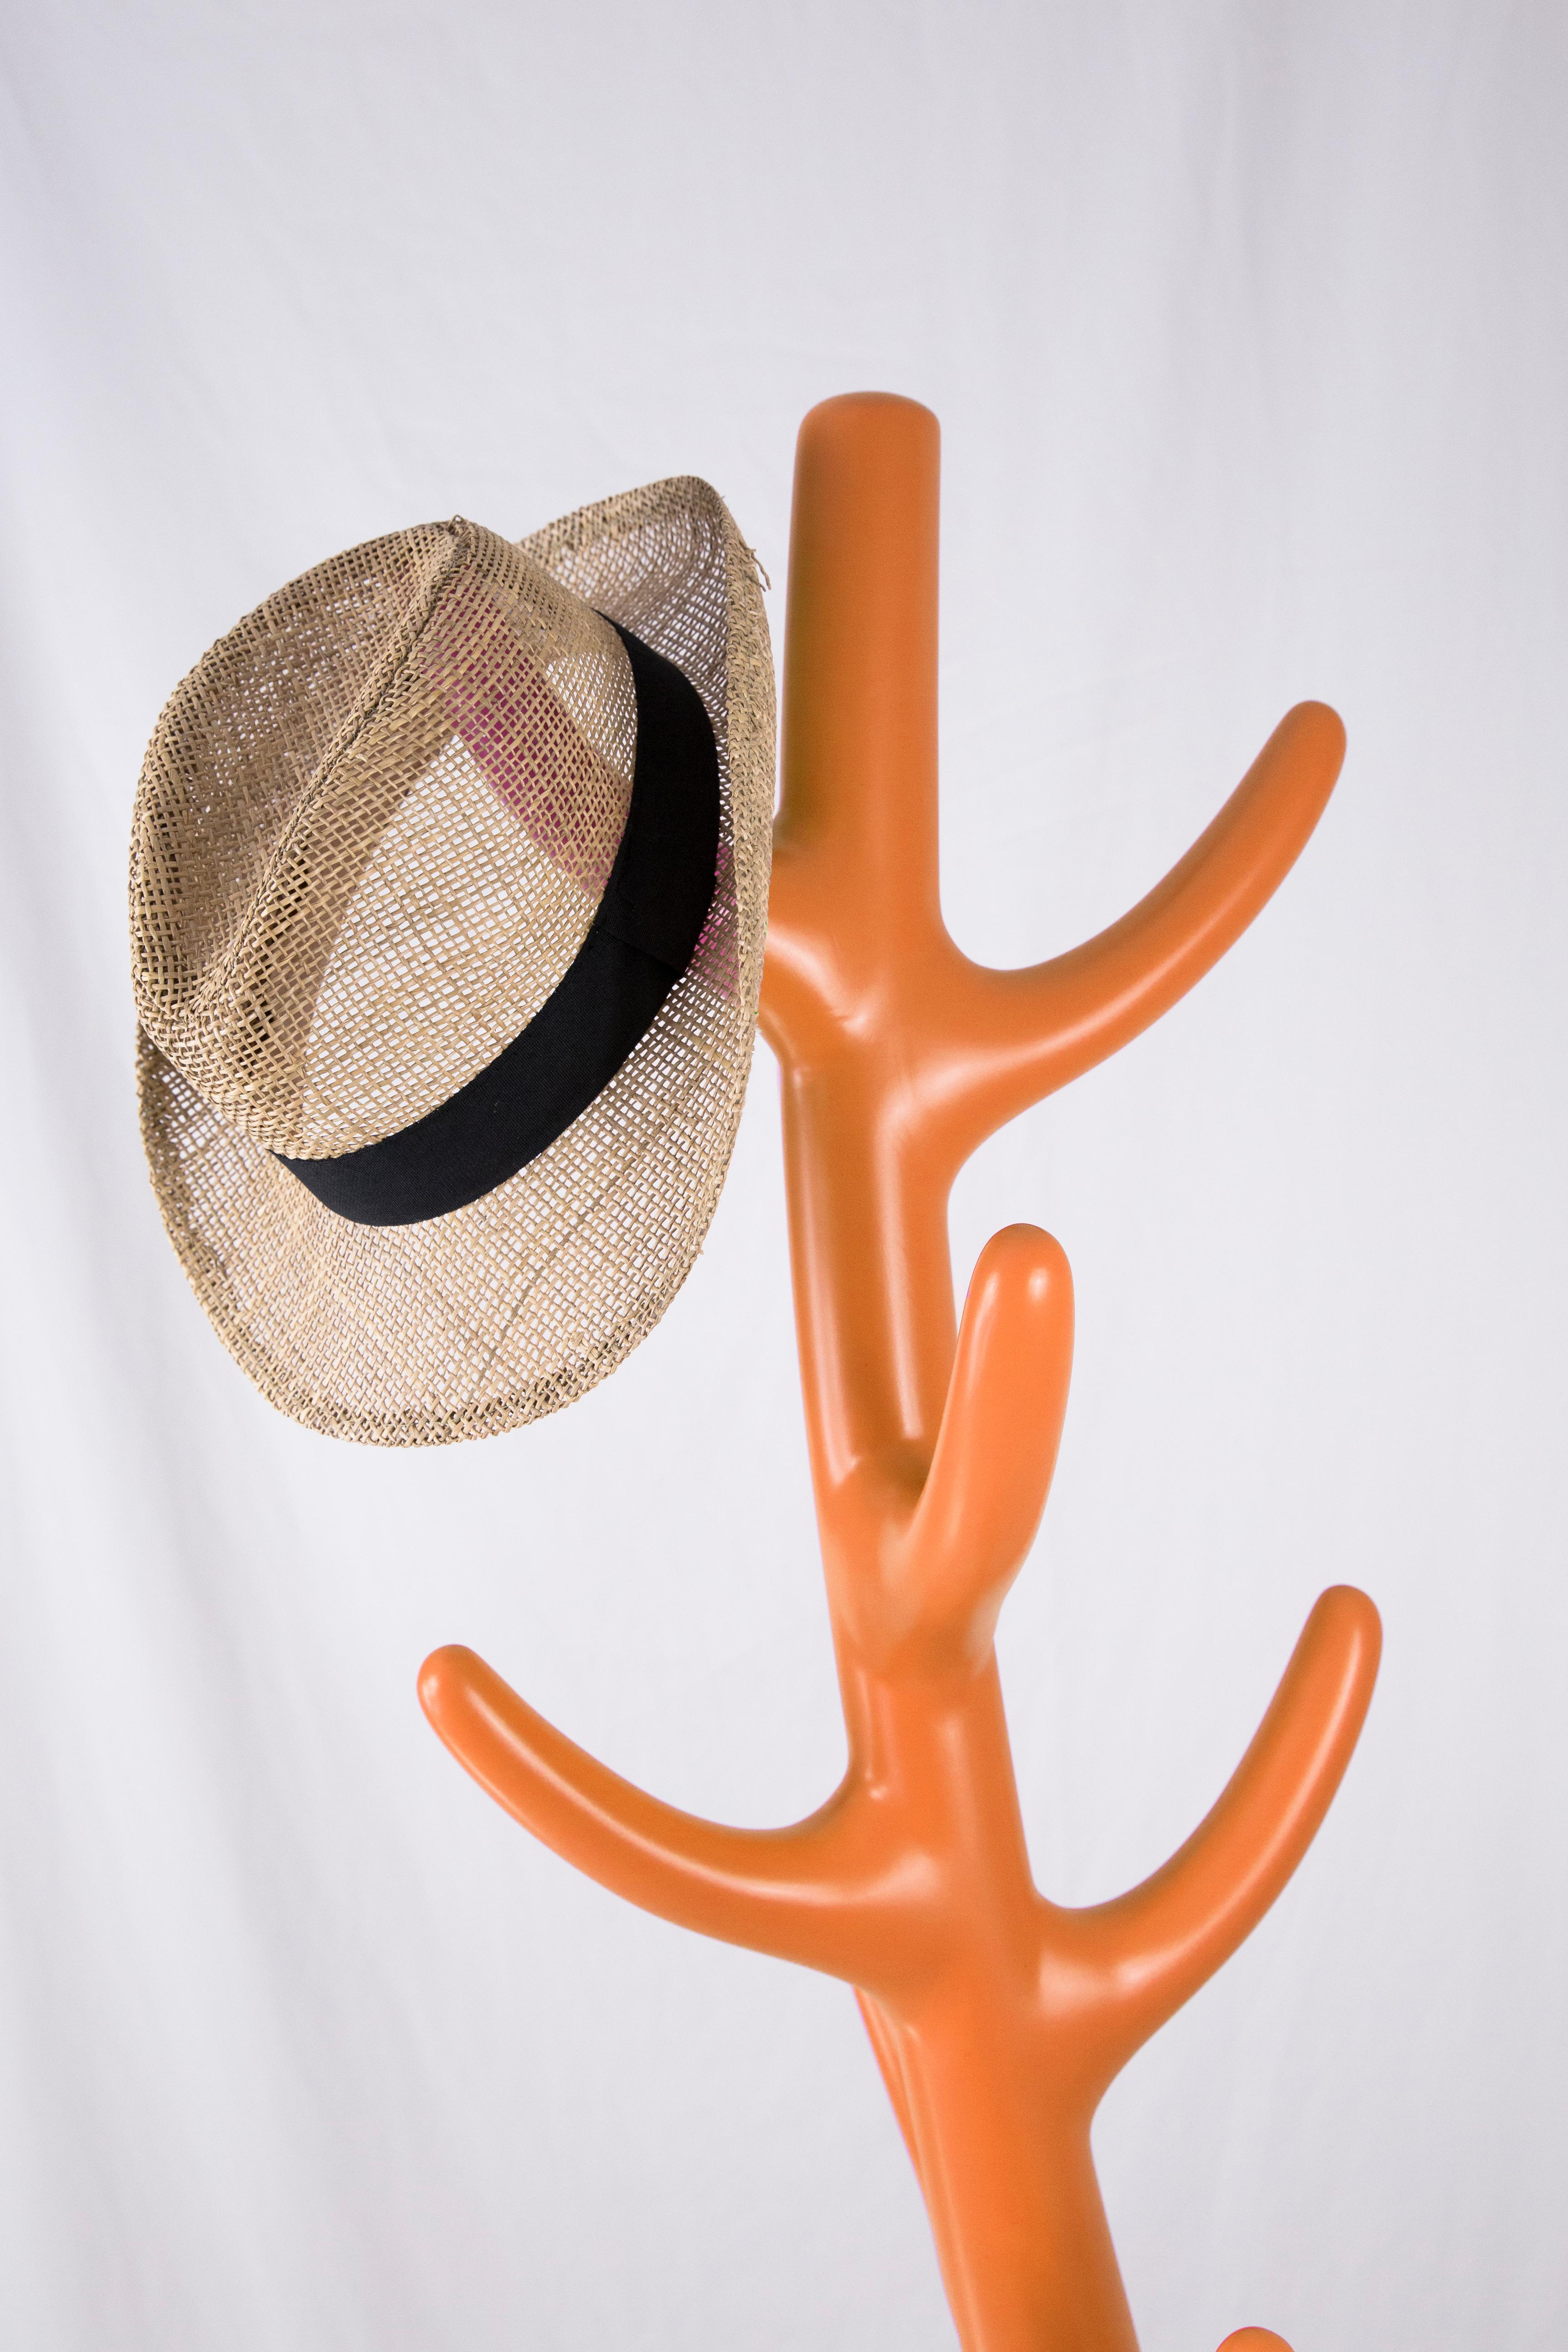 Post-Modern Crooked Coat Rack: Artistic Orange Sculptural Hanger For Sale